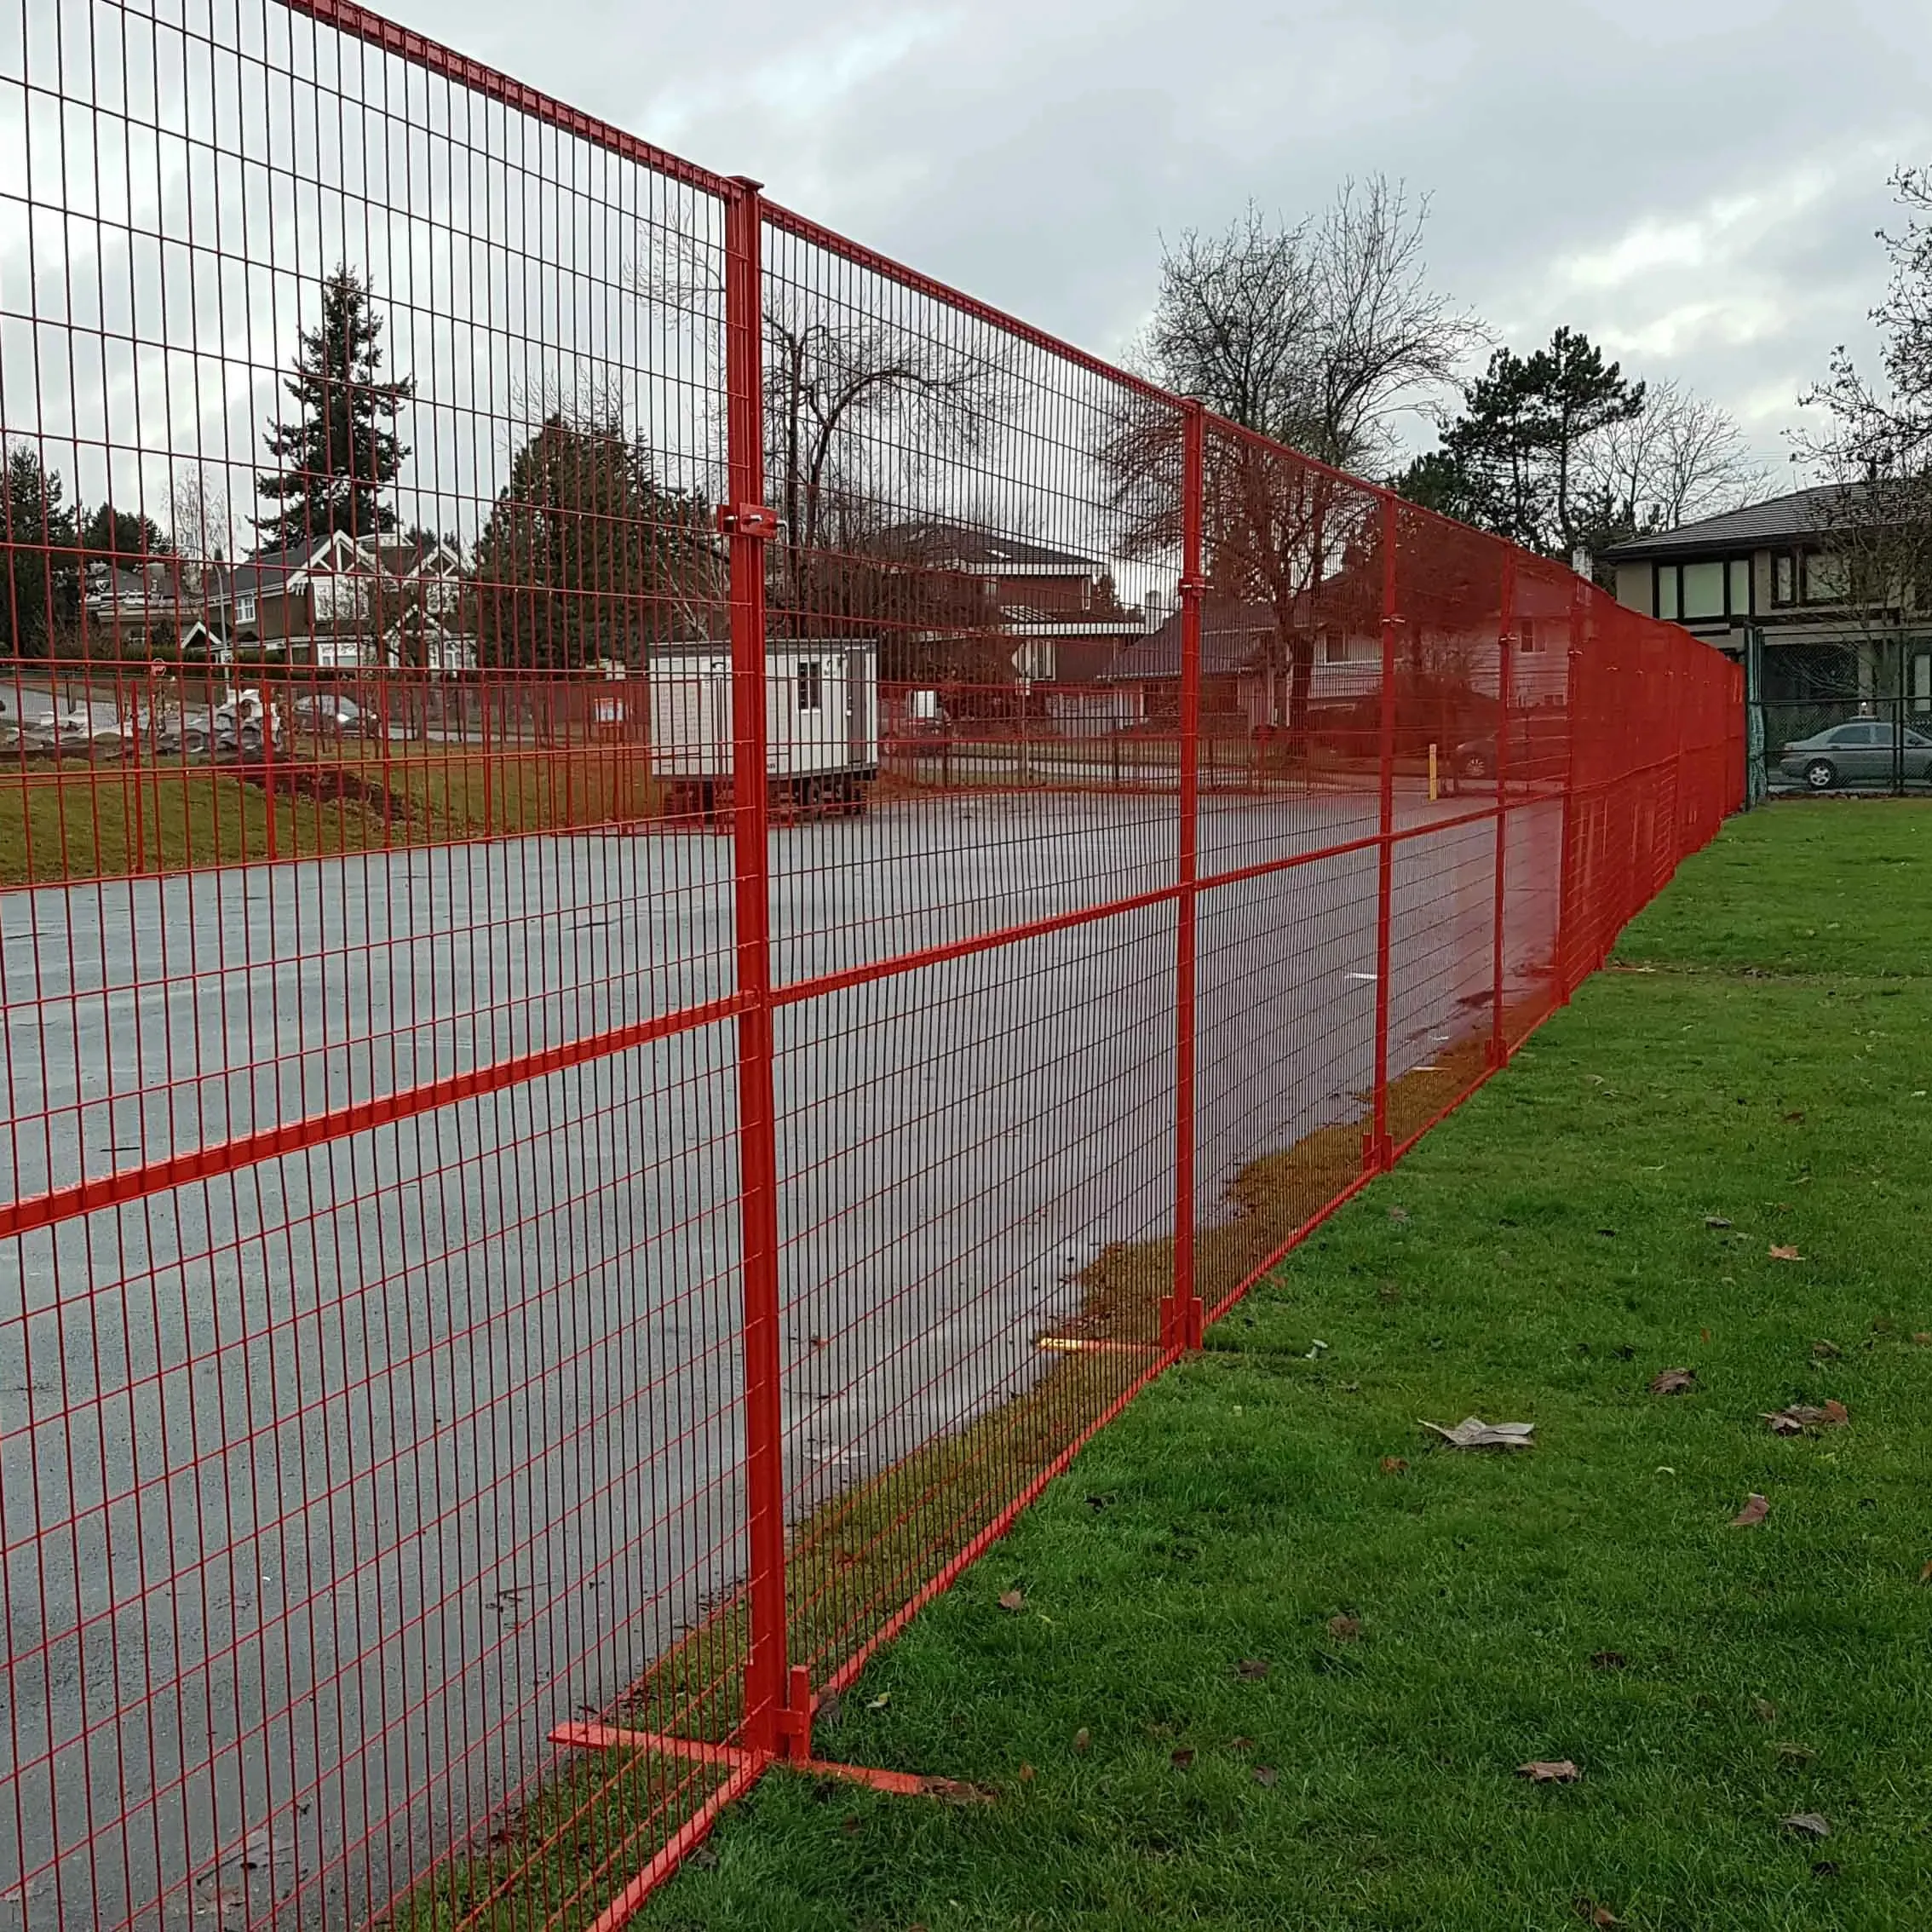 2.1*2.4m avustralya standartları inşaat kaynaklı kanada geçici bina çit